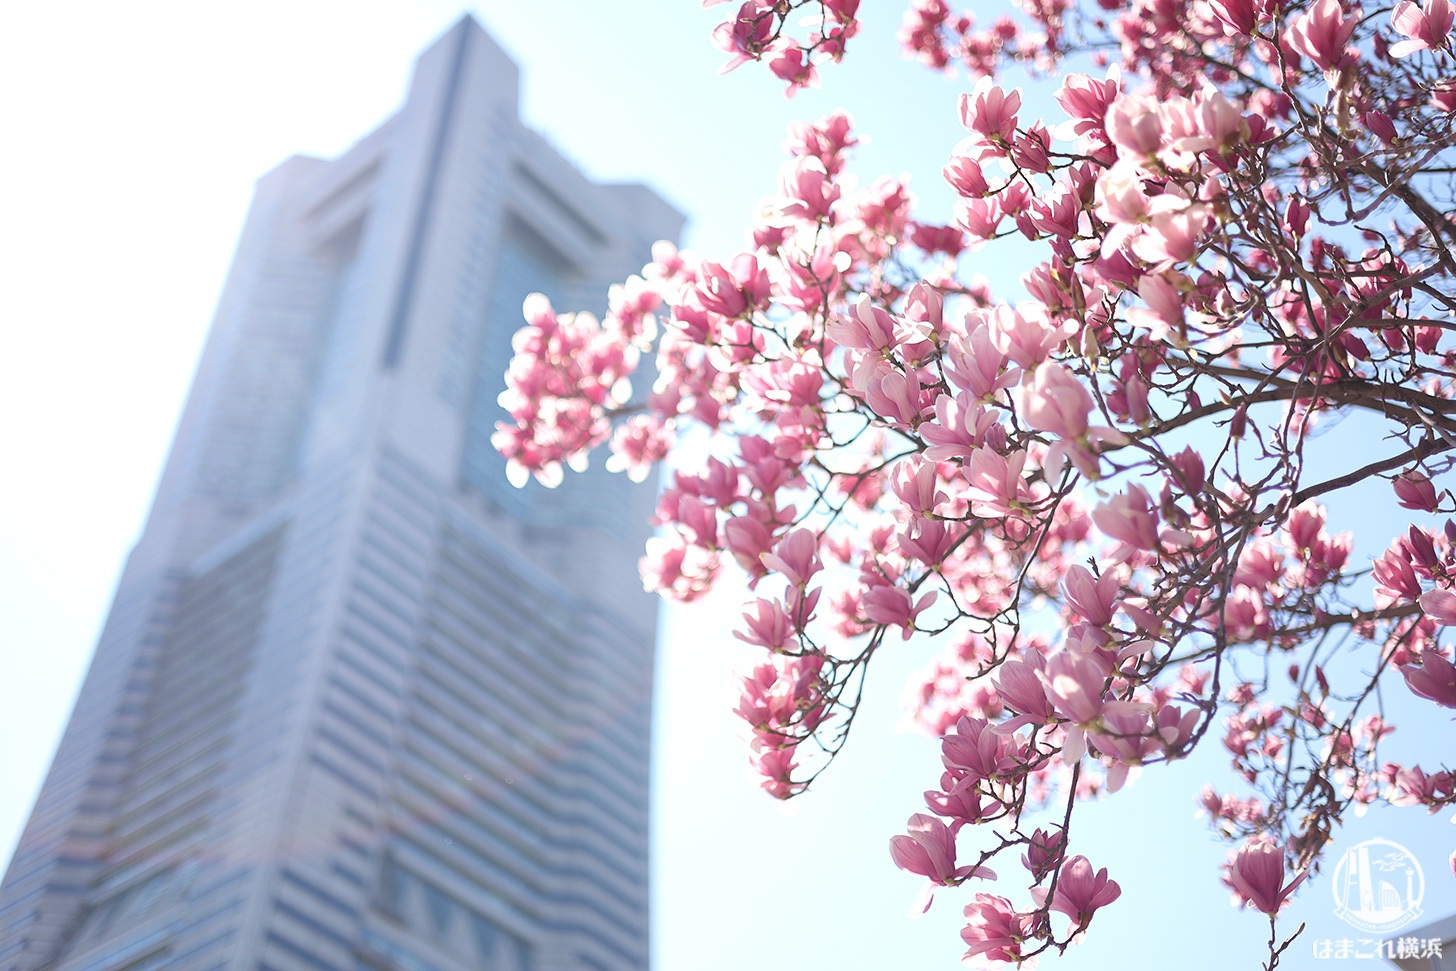 横浜 グランモール公園のモクレンが美しい ピンク色の花々眺めて春散歩 はまこれ横浜